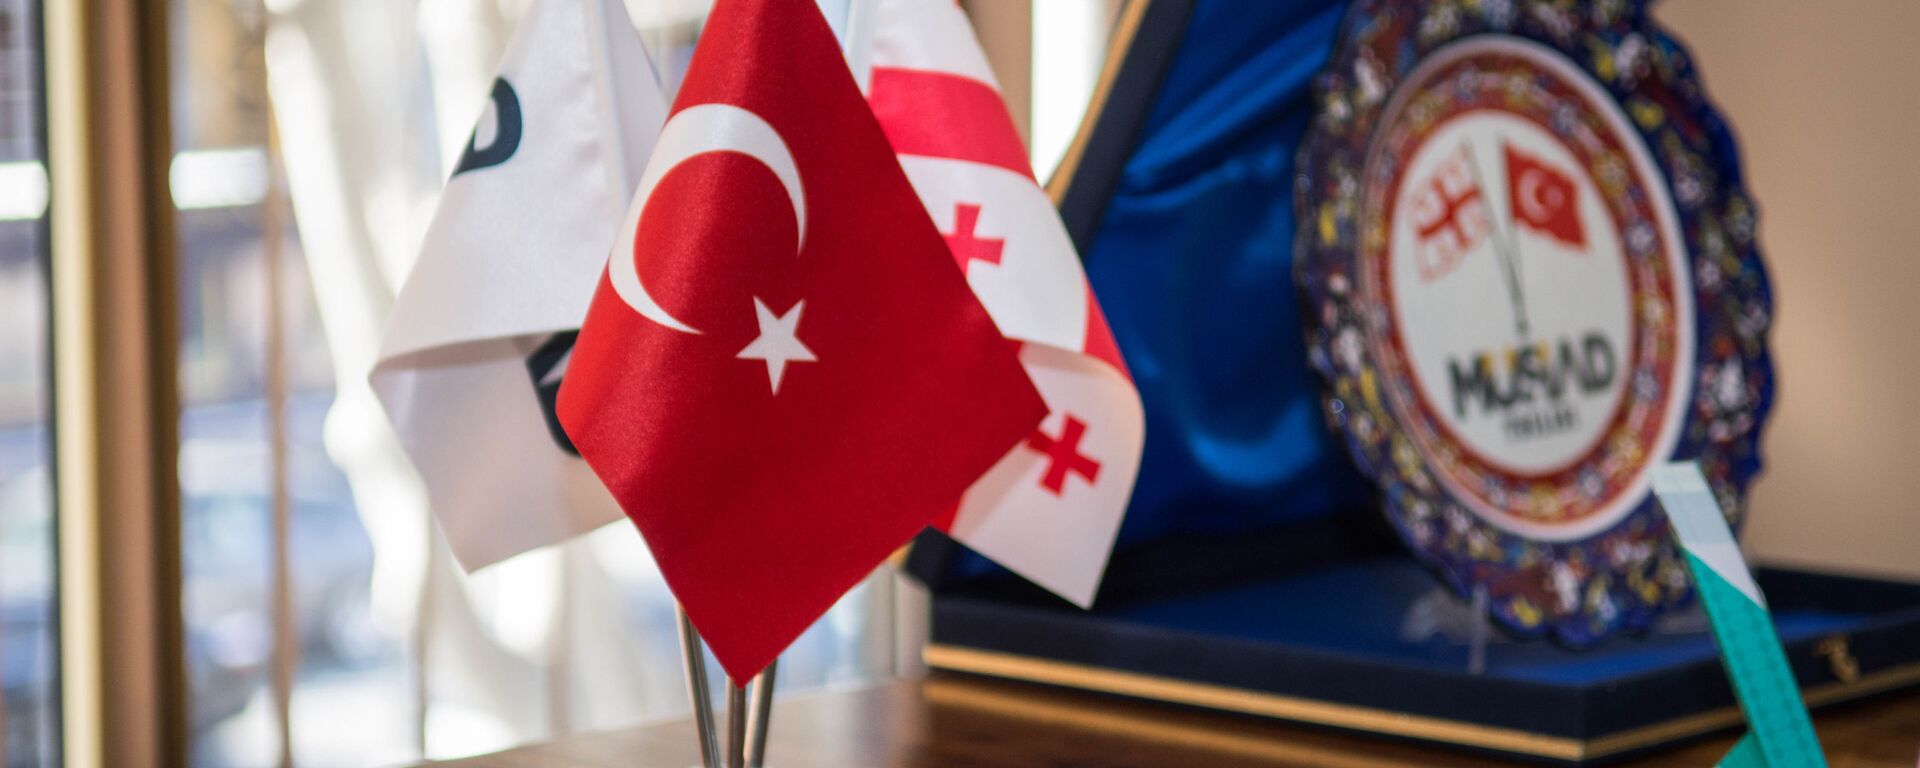 Флаги Грузии и Турции - Sputnik Грузия, 1920, 05.06.2019